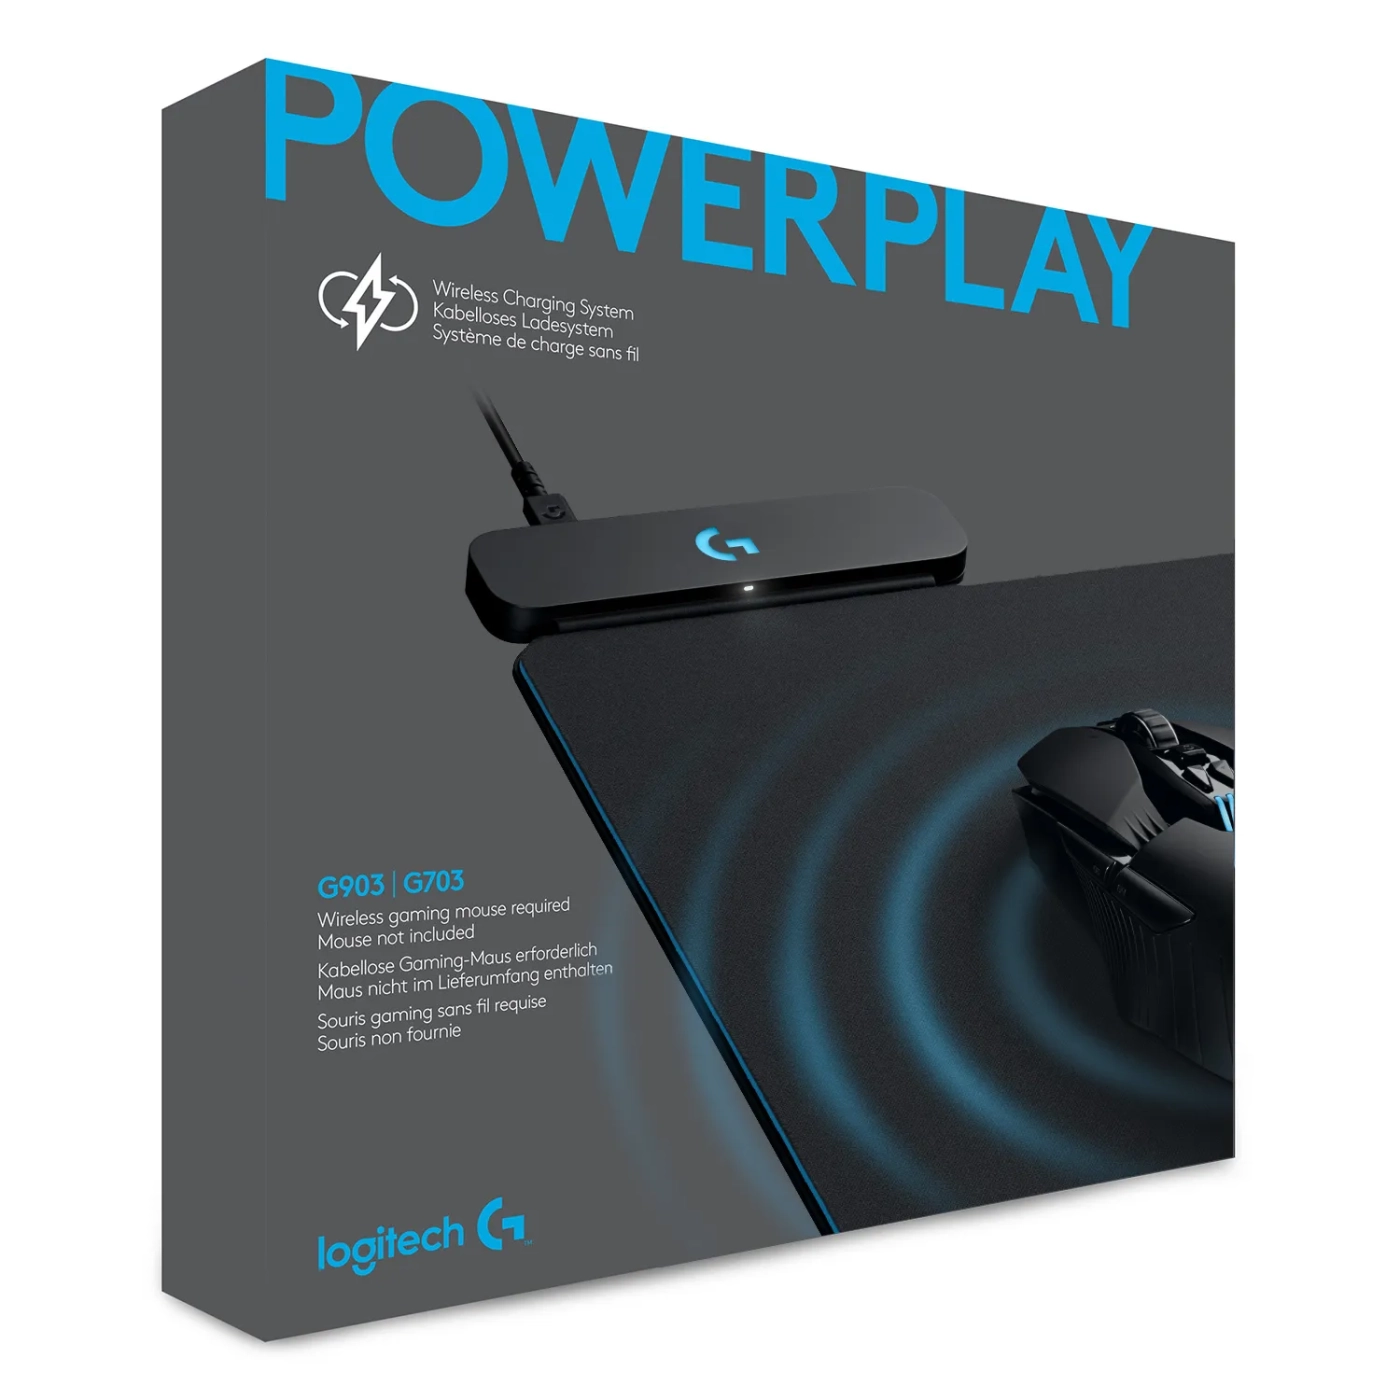 Купить Игровая поверхность Logitech G Power Play Wireless Charging System (943-000110) - фото 8